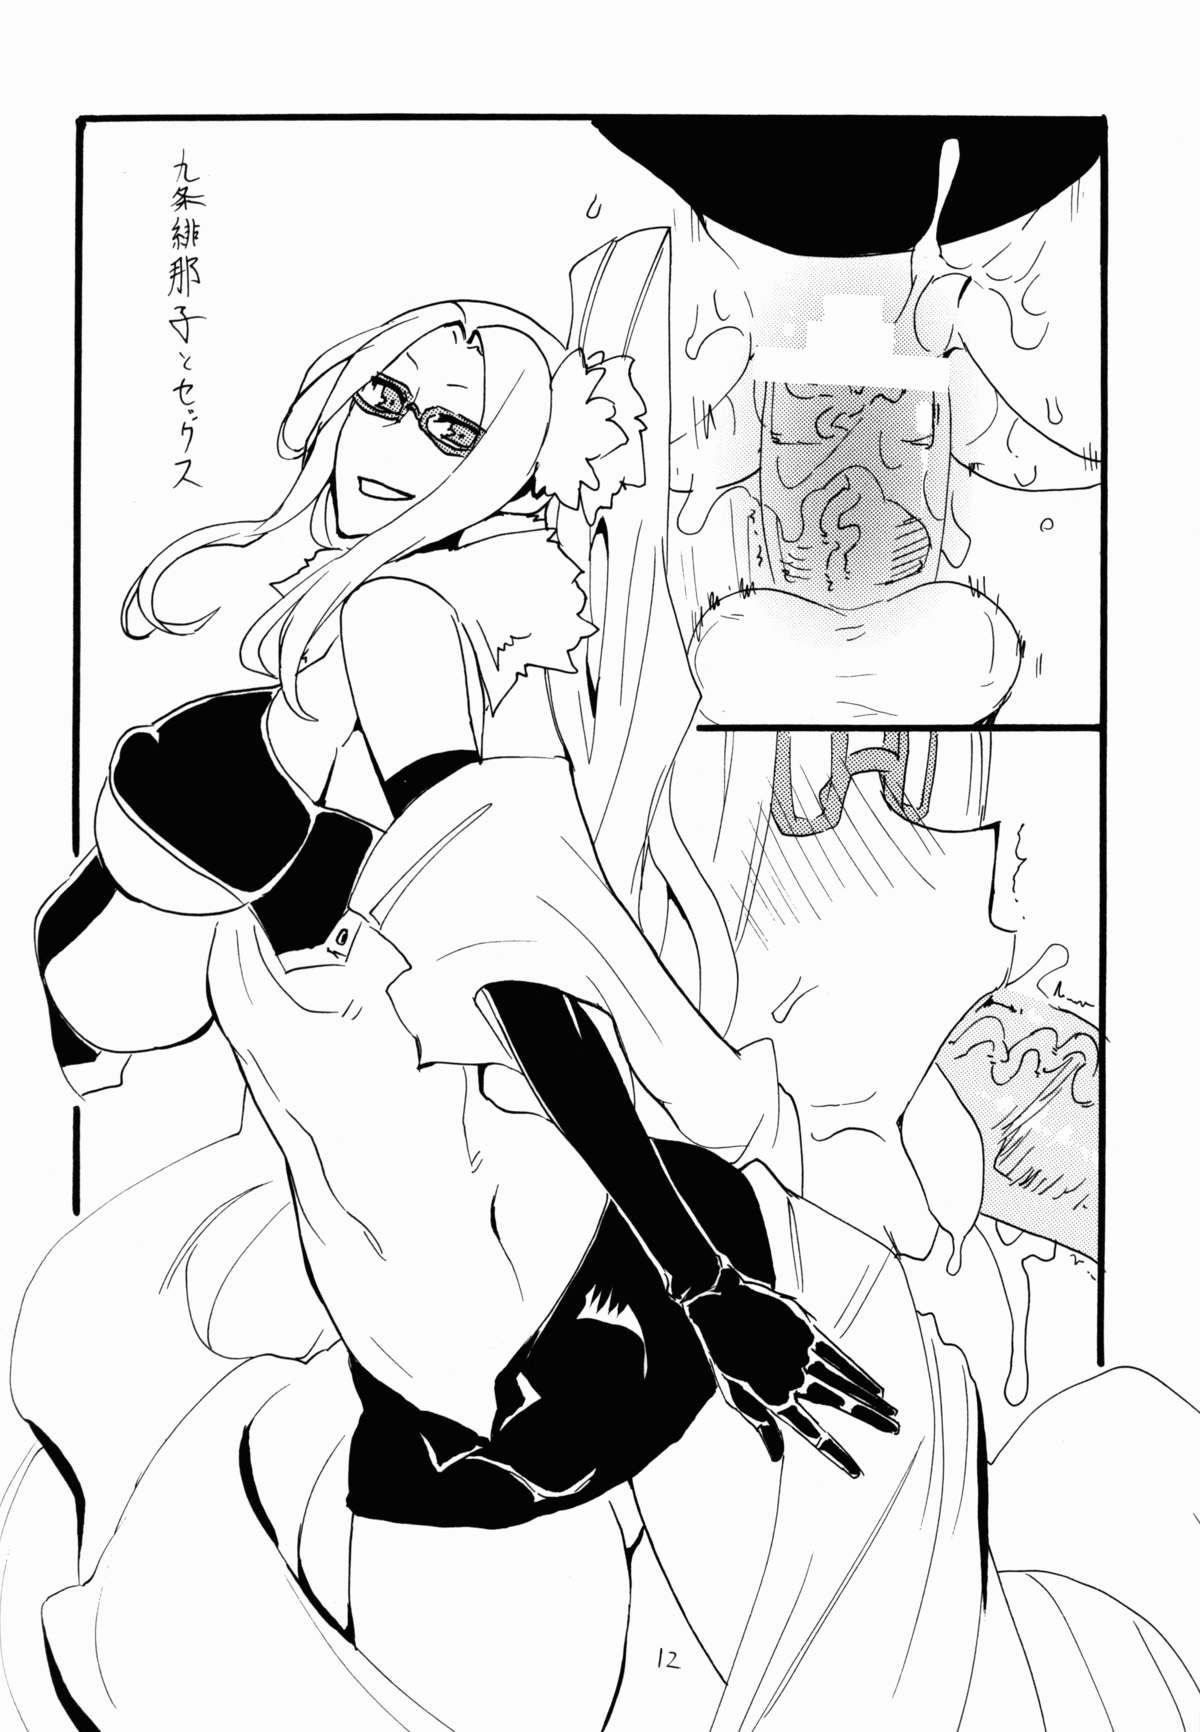 Women Sucking Dicks Haru Oppai - Suisei no gargantia Stripping - Page 12